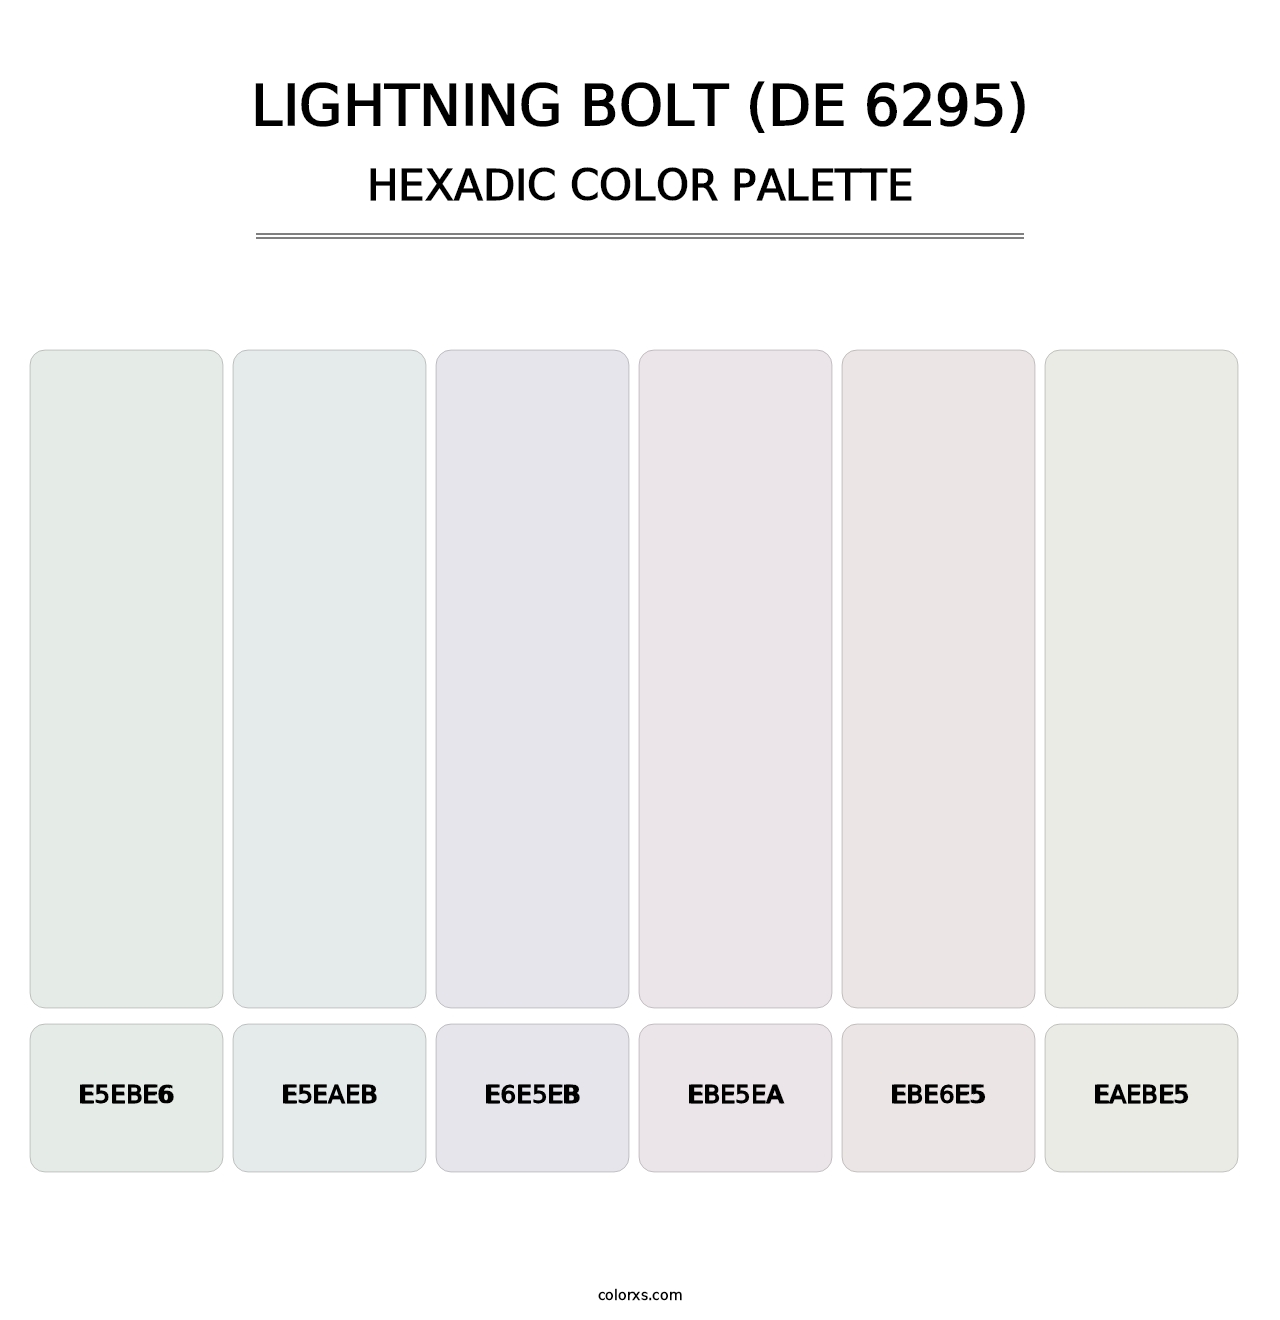 Lightning Bolt (DE 6295) - Hexadic Color Palette